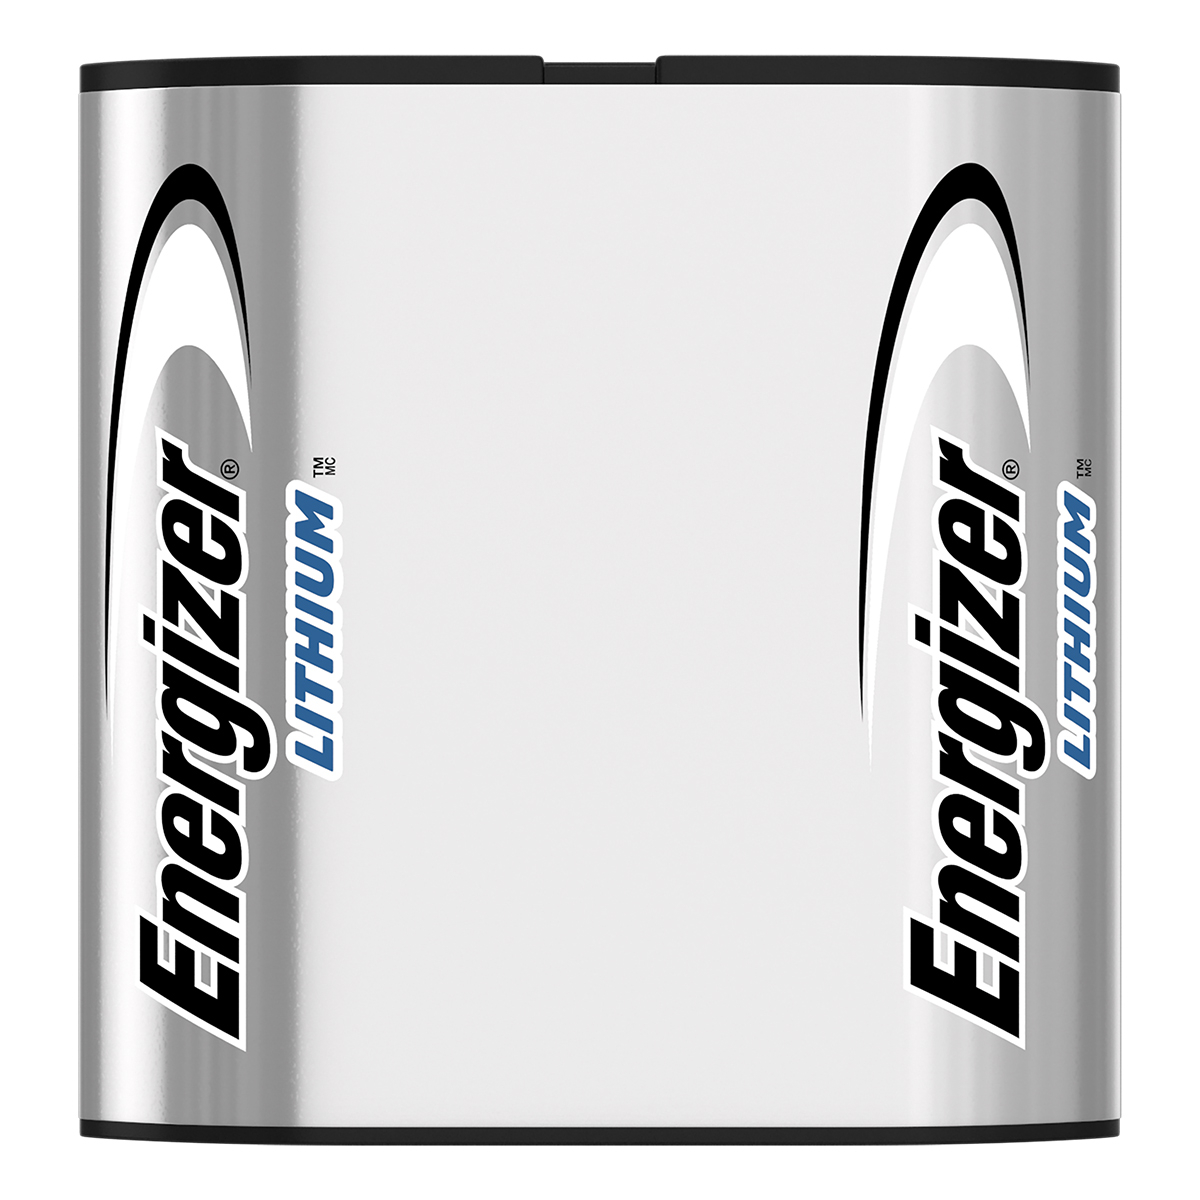 Energizer lithium photo battery 223